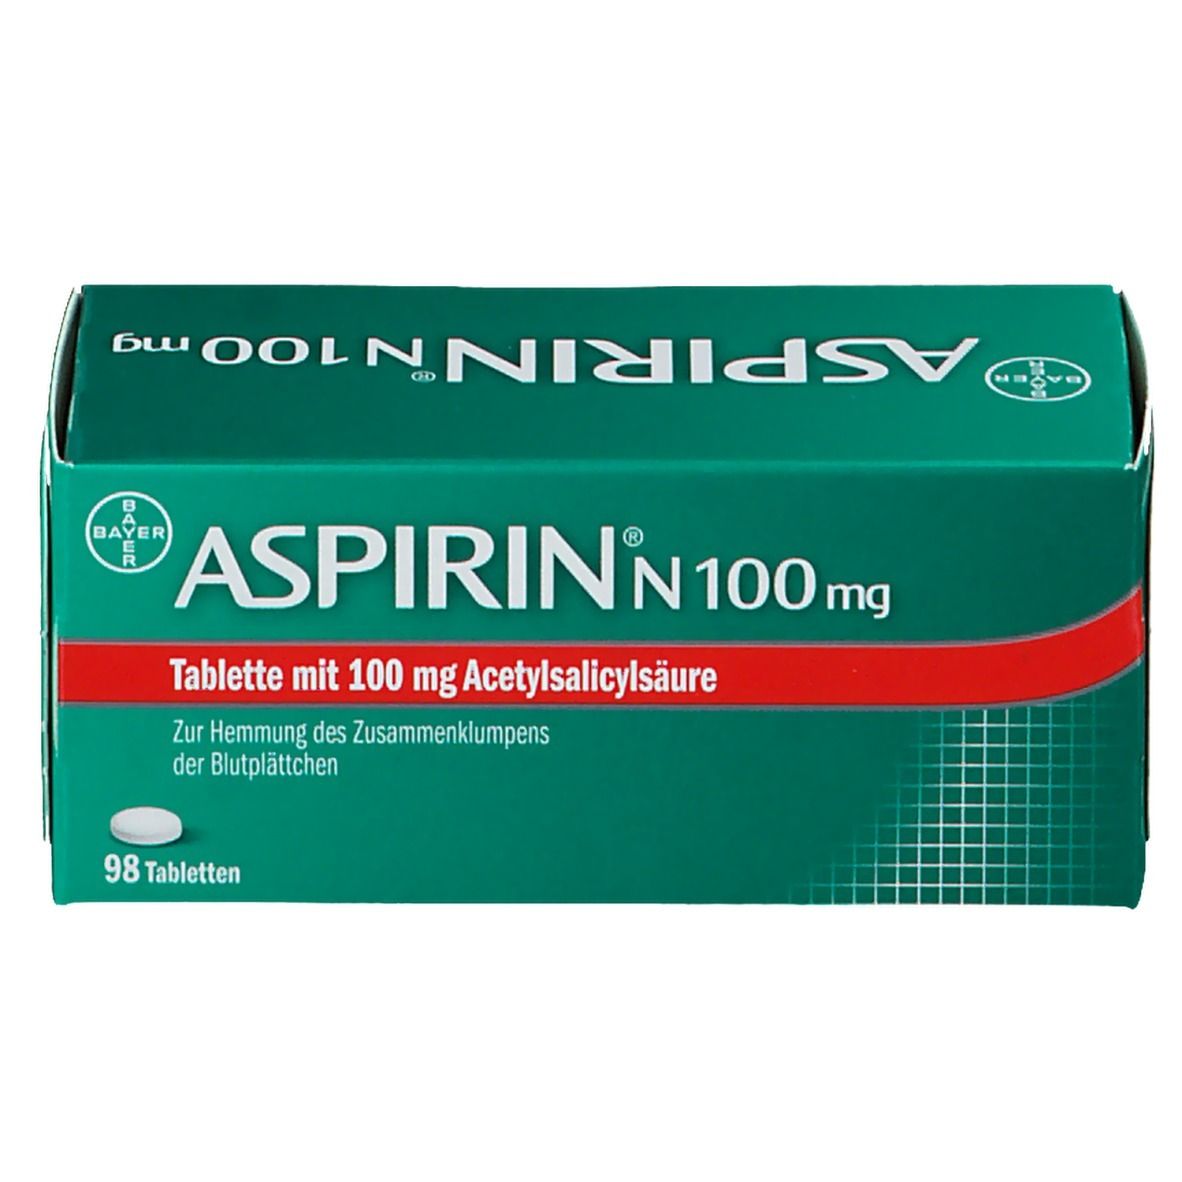 ASPIRIN® N 100 mg